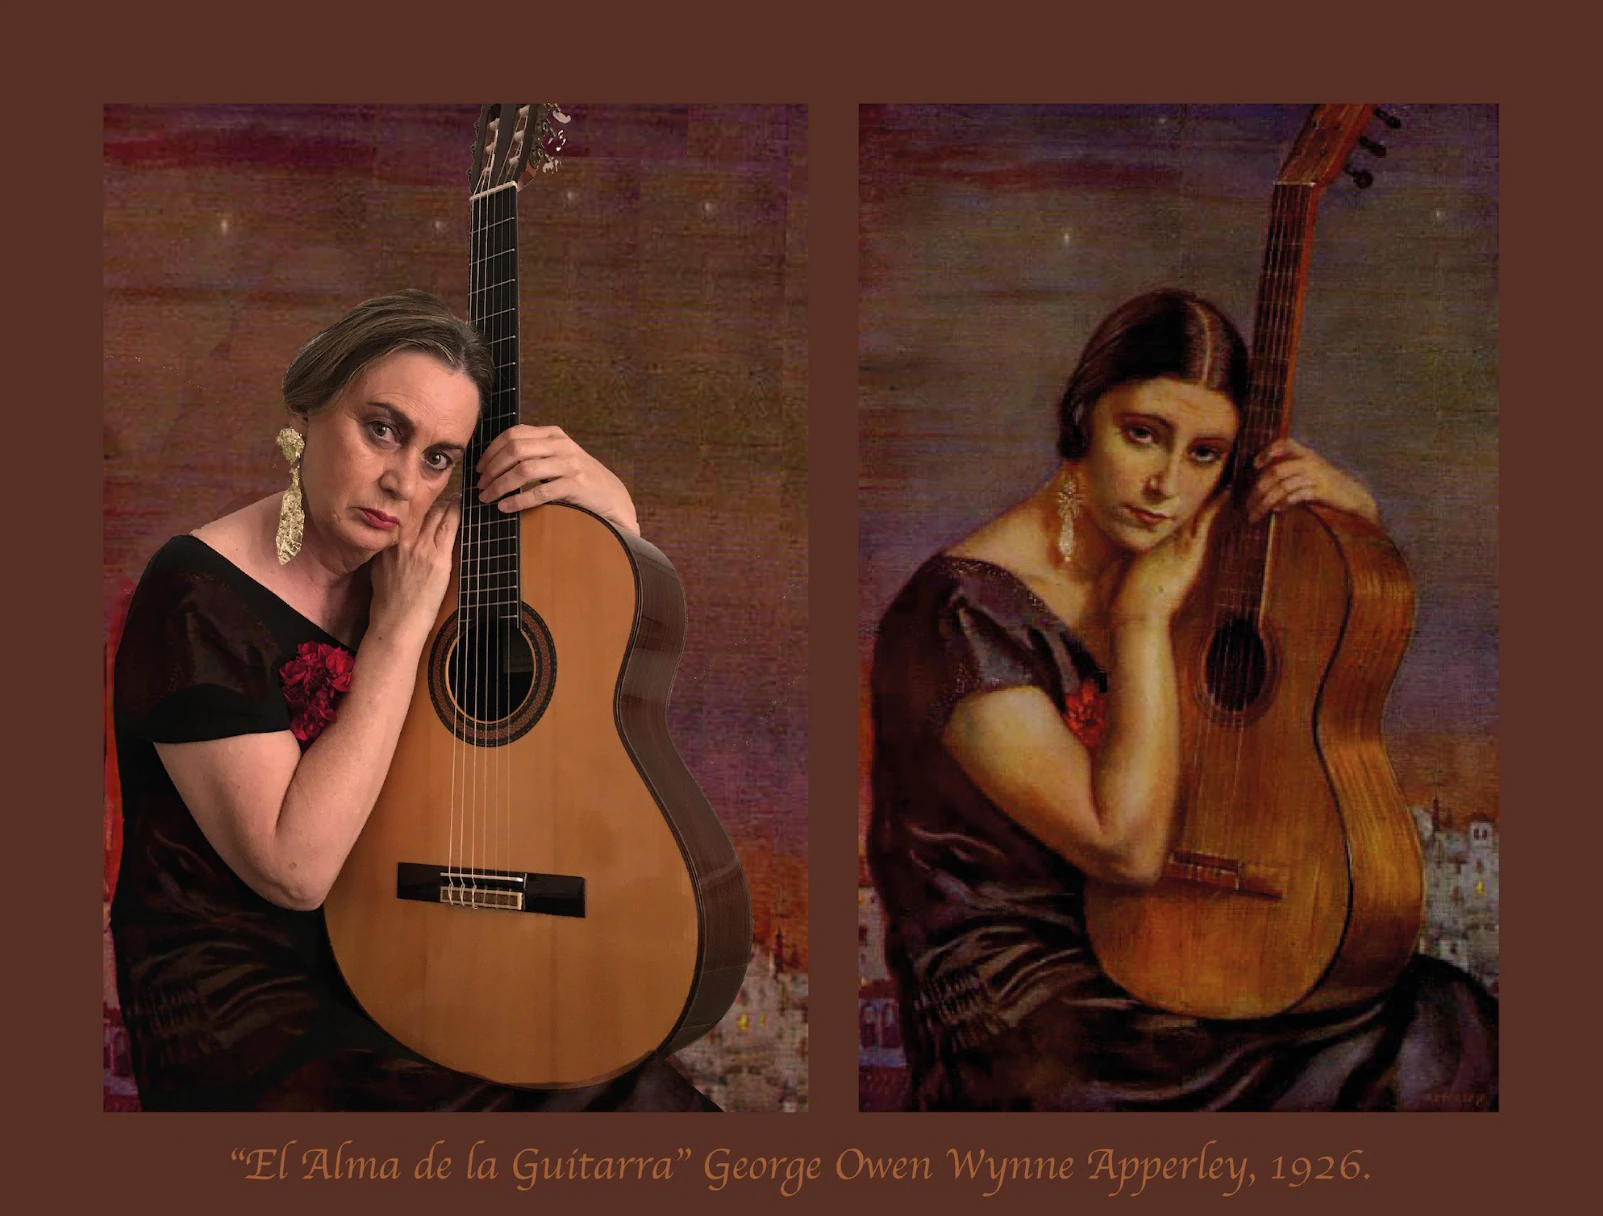 Título del cuadro: ‘El alma de la guitarra’. Autor/a: George Owen Wynne Apperley (Jorge Apperley). Pintado: 1926. Maestro/a imitador: Lucía Lledías, Maestra de Inglés.